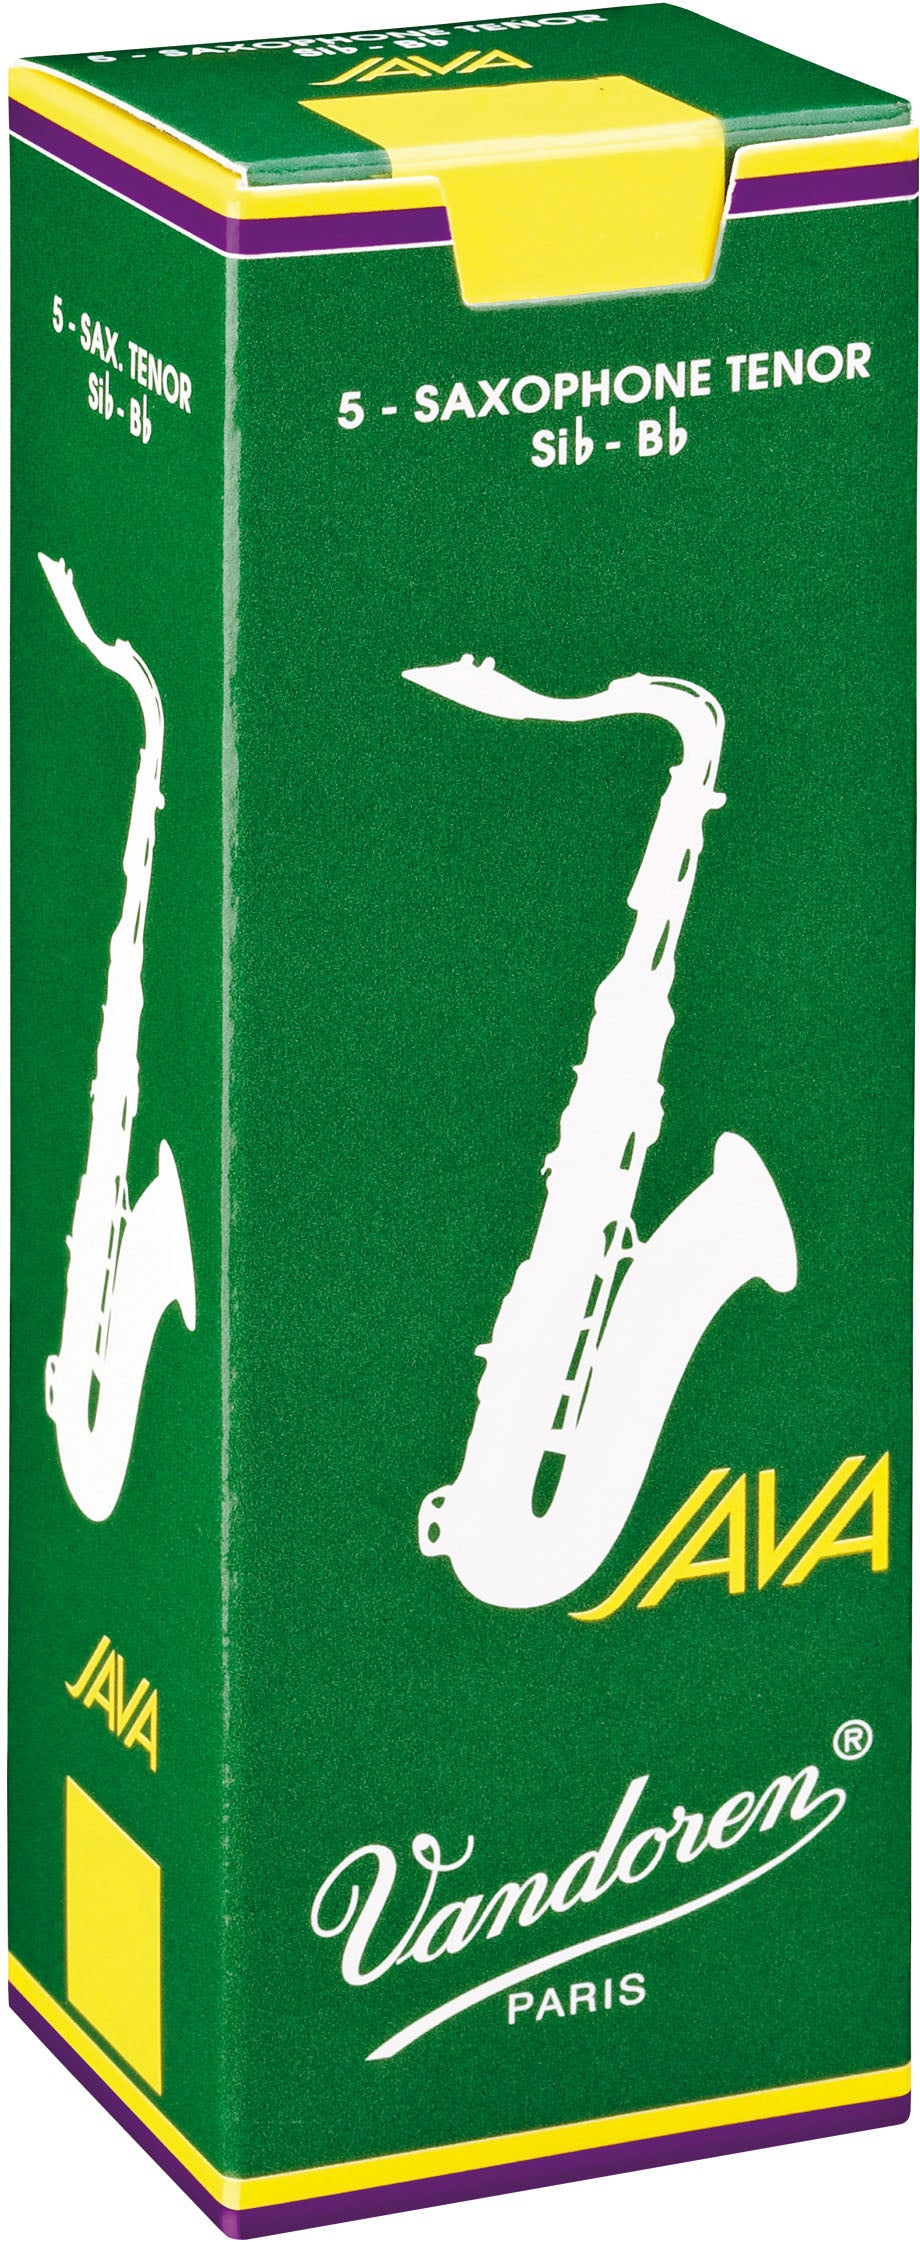 Vandoren Java Tenor Saxophone Reeds, Box of 5 - Strength 2